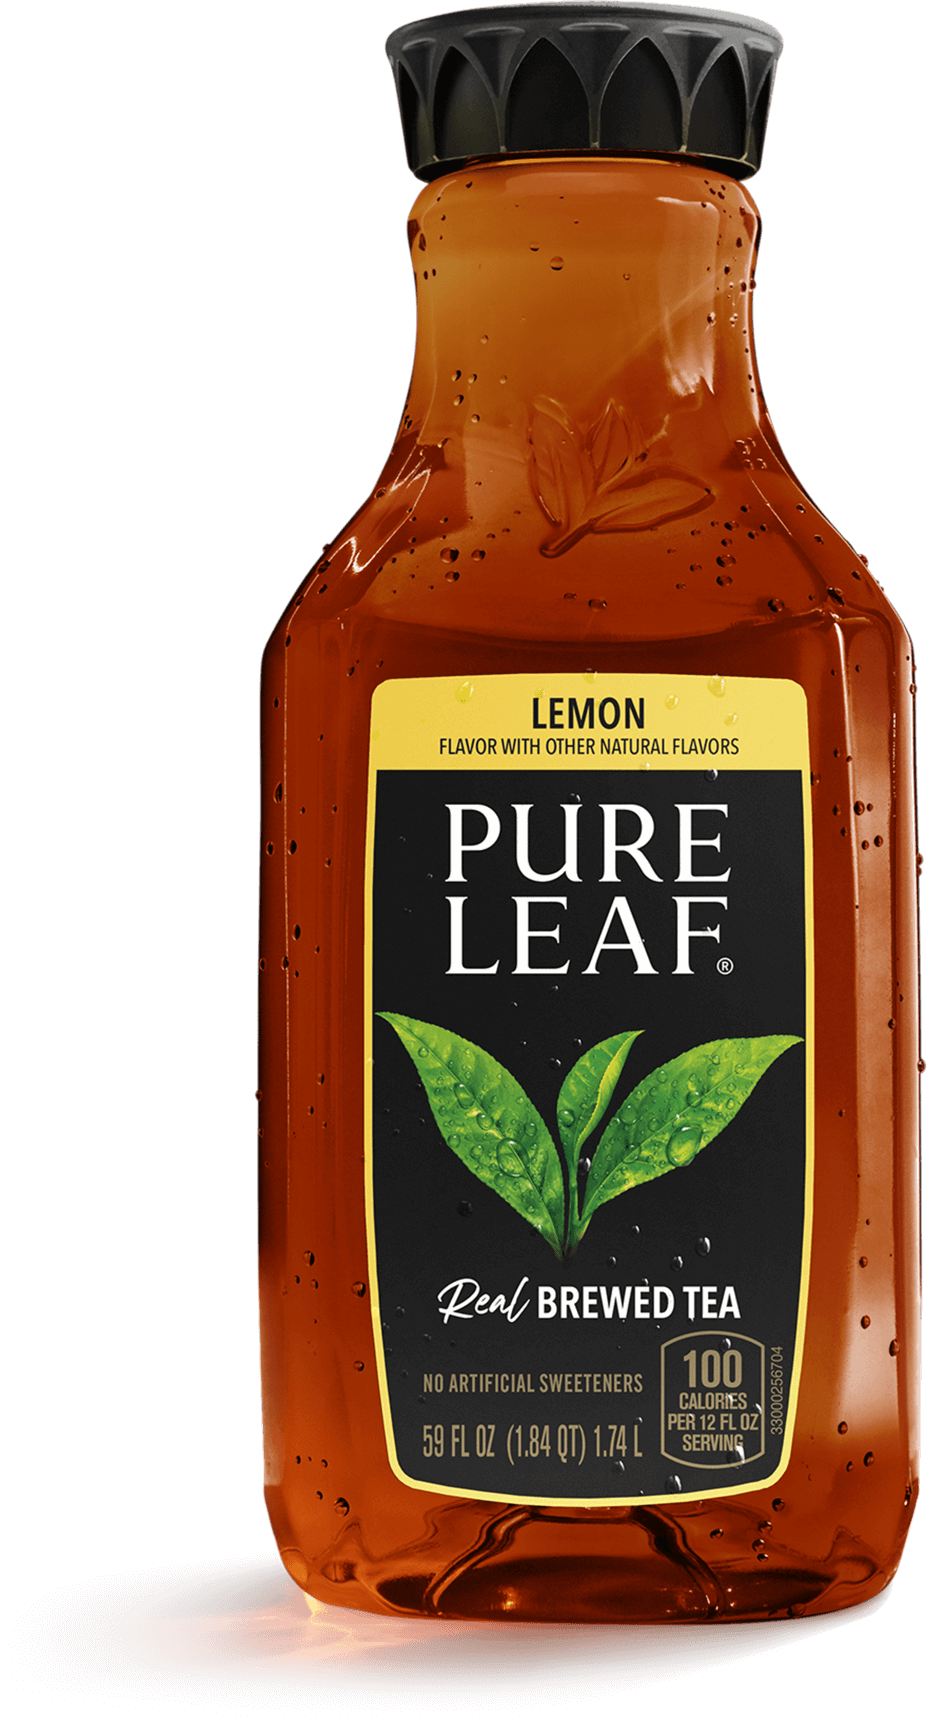 Pure Leaf Real Brewed Tea, Lower Sugar, Subtly Sweet Tea